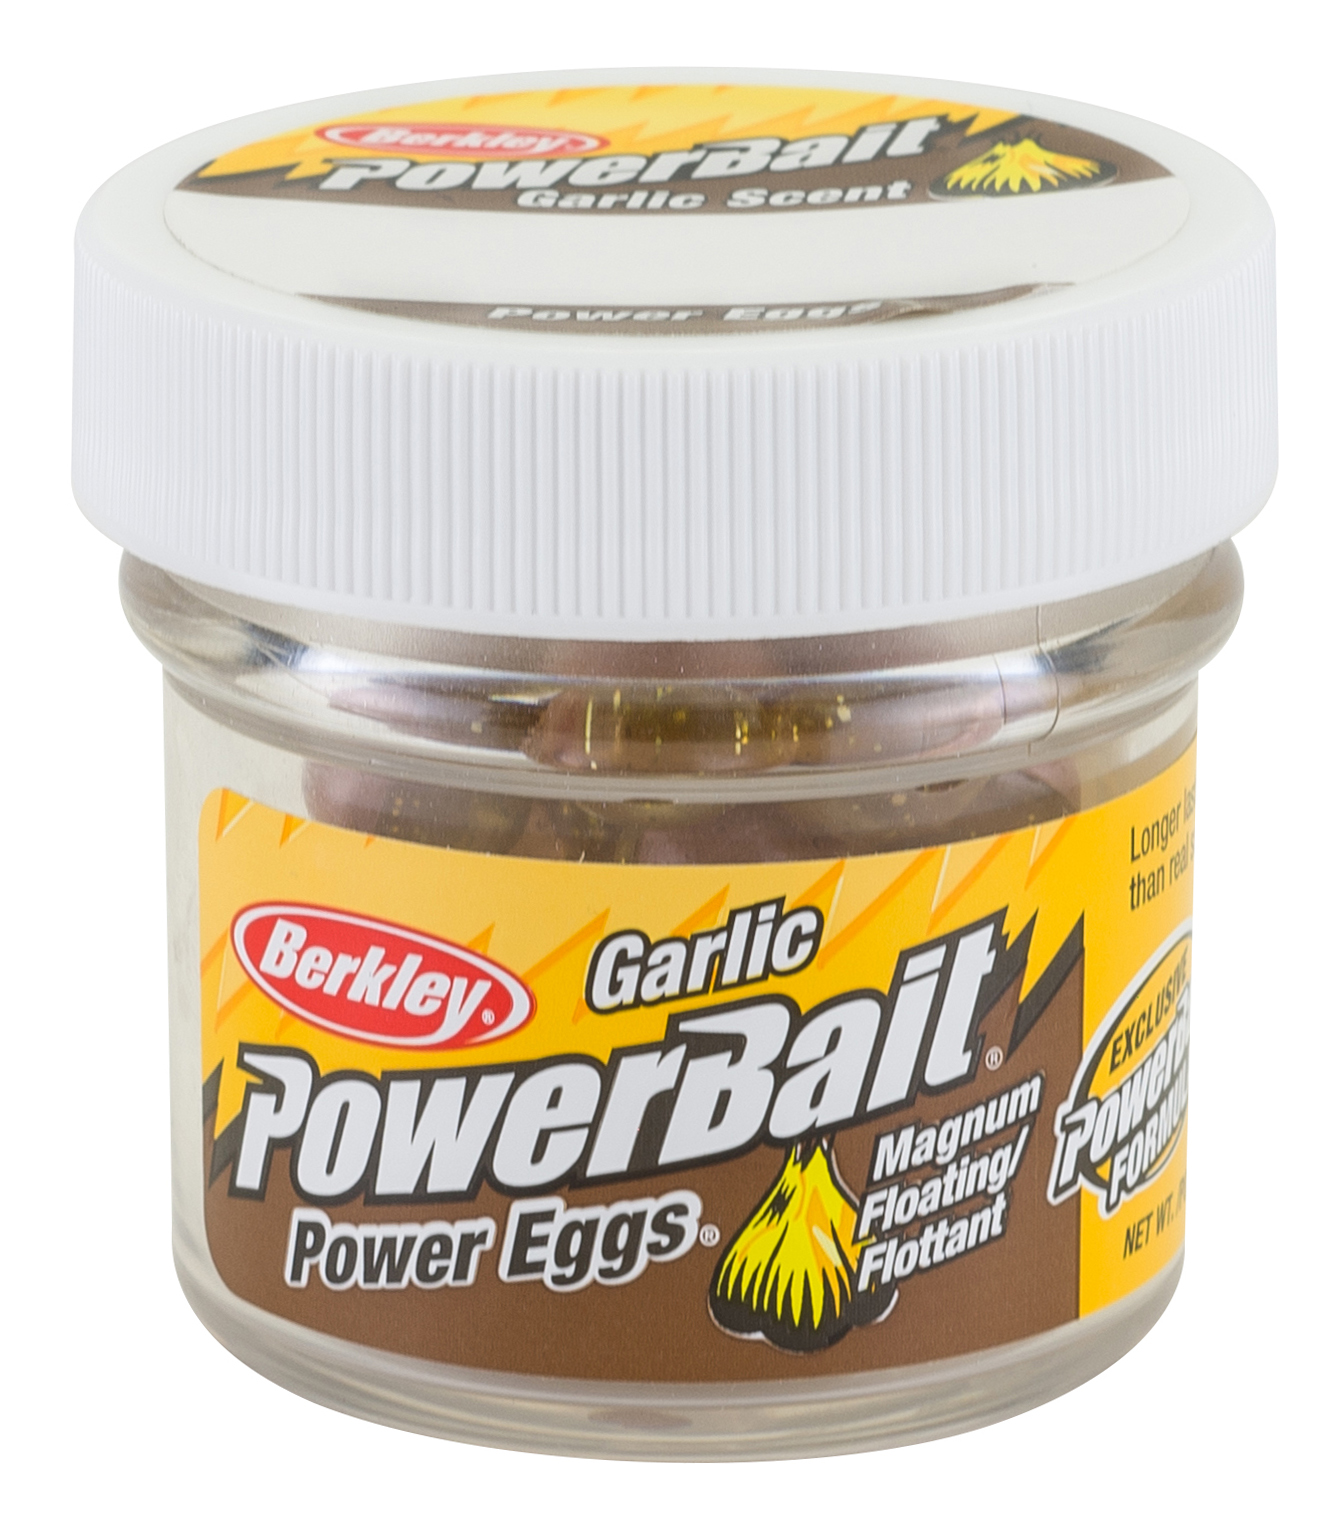 Berkley Powerbait Jar Garlic Flavour Floating Eggs – Glasgow